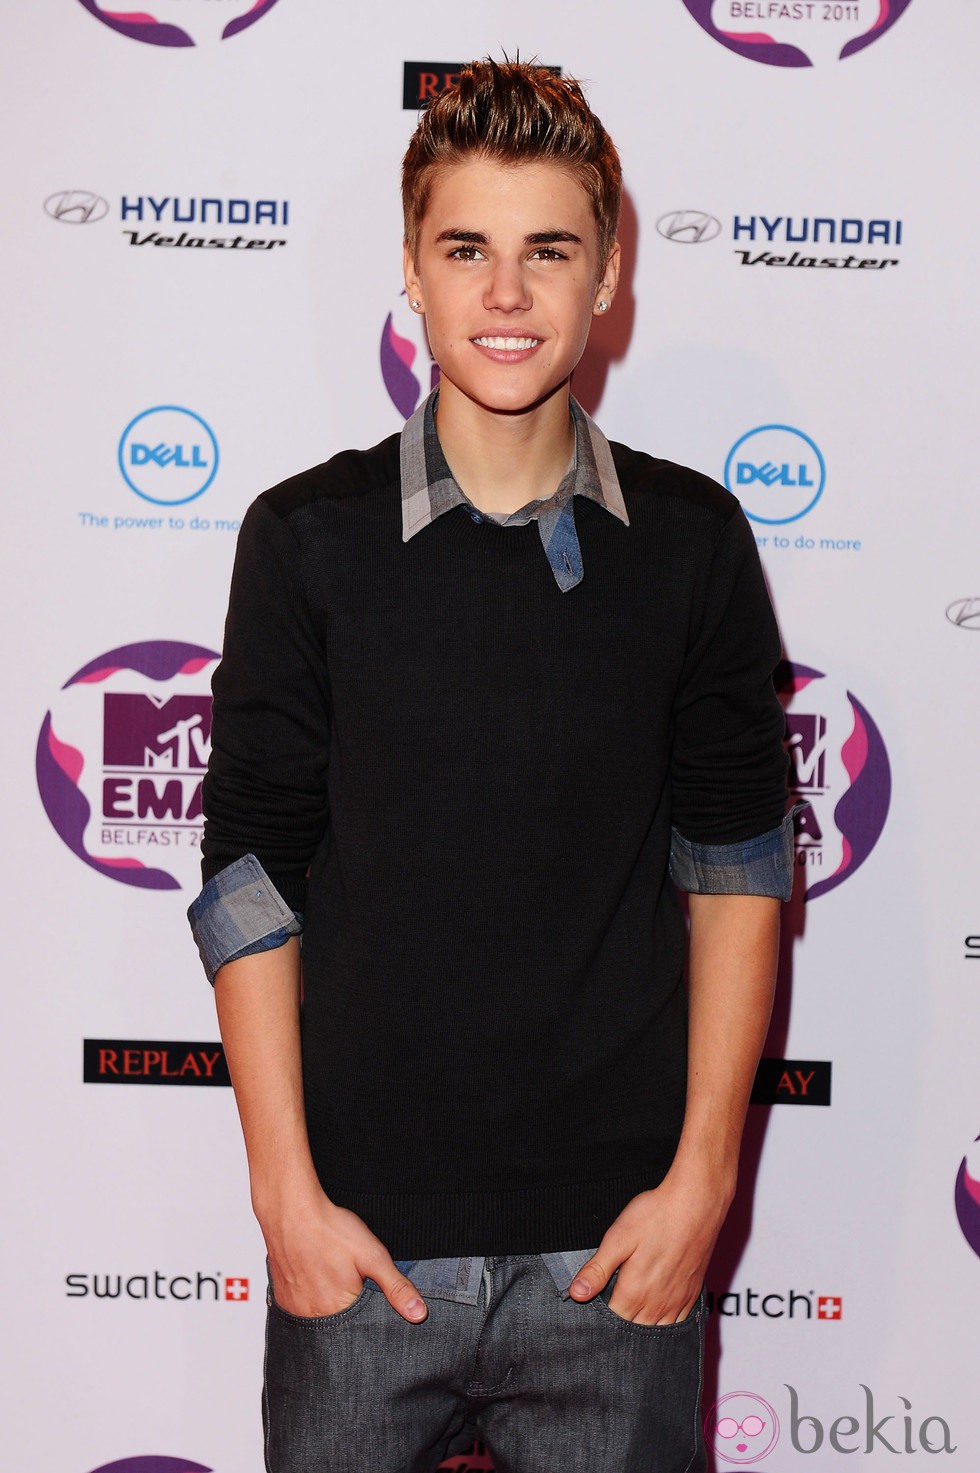 El peinado con el flequillo hacia arriba de Justin Bieber en los MTV EMA 2011